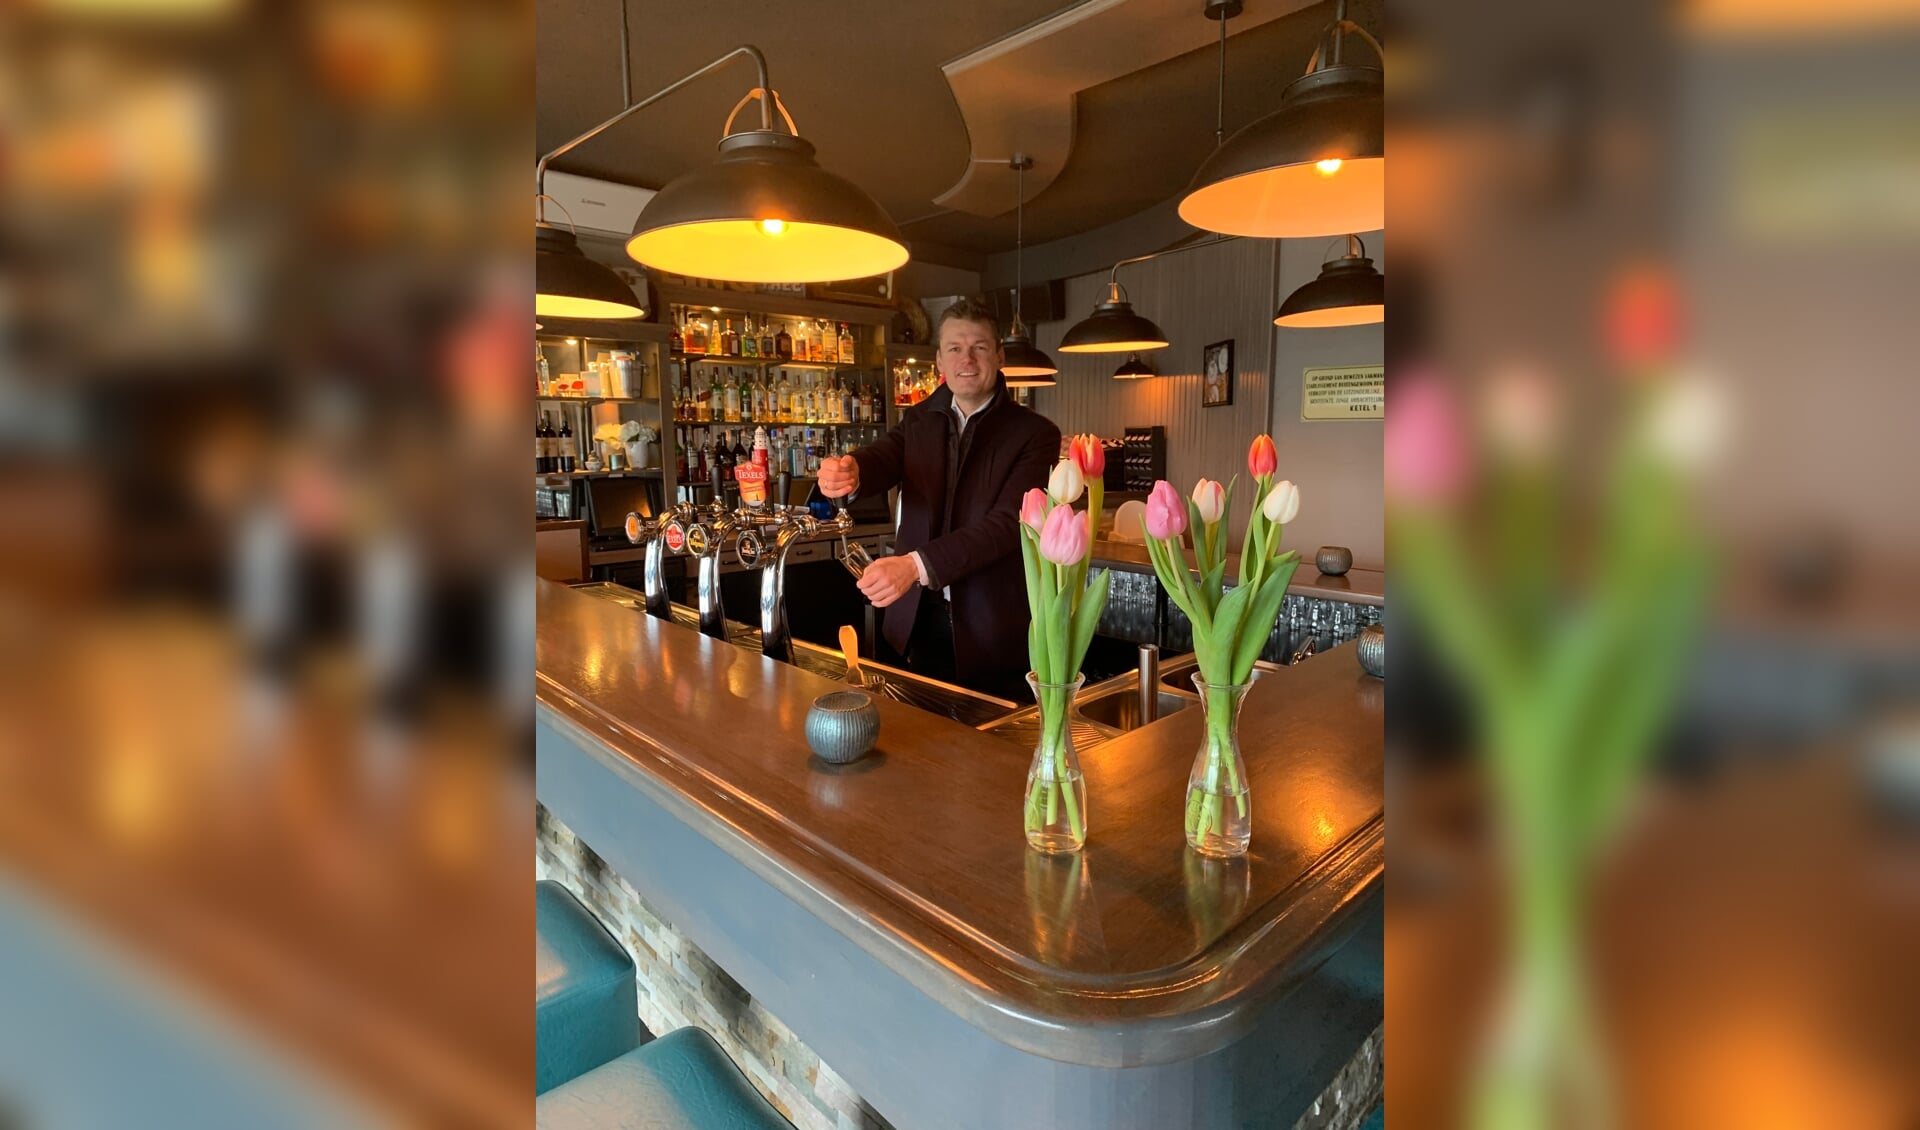 Burgemeester Nieuwenhuis komt een drankje doen bij Linq zodra het kan. (tekst: Nicole Lamers/foto: pr)